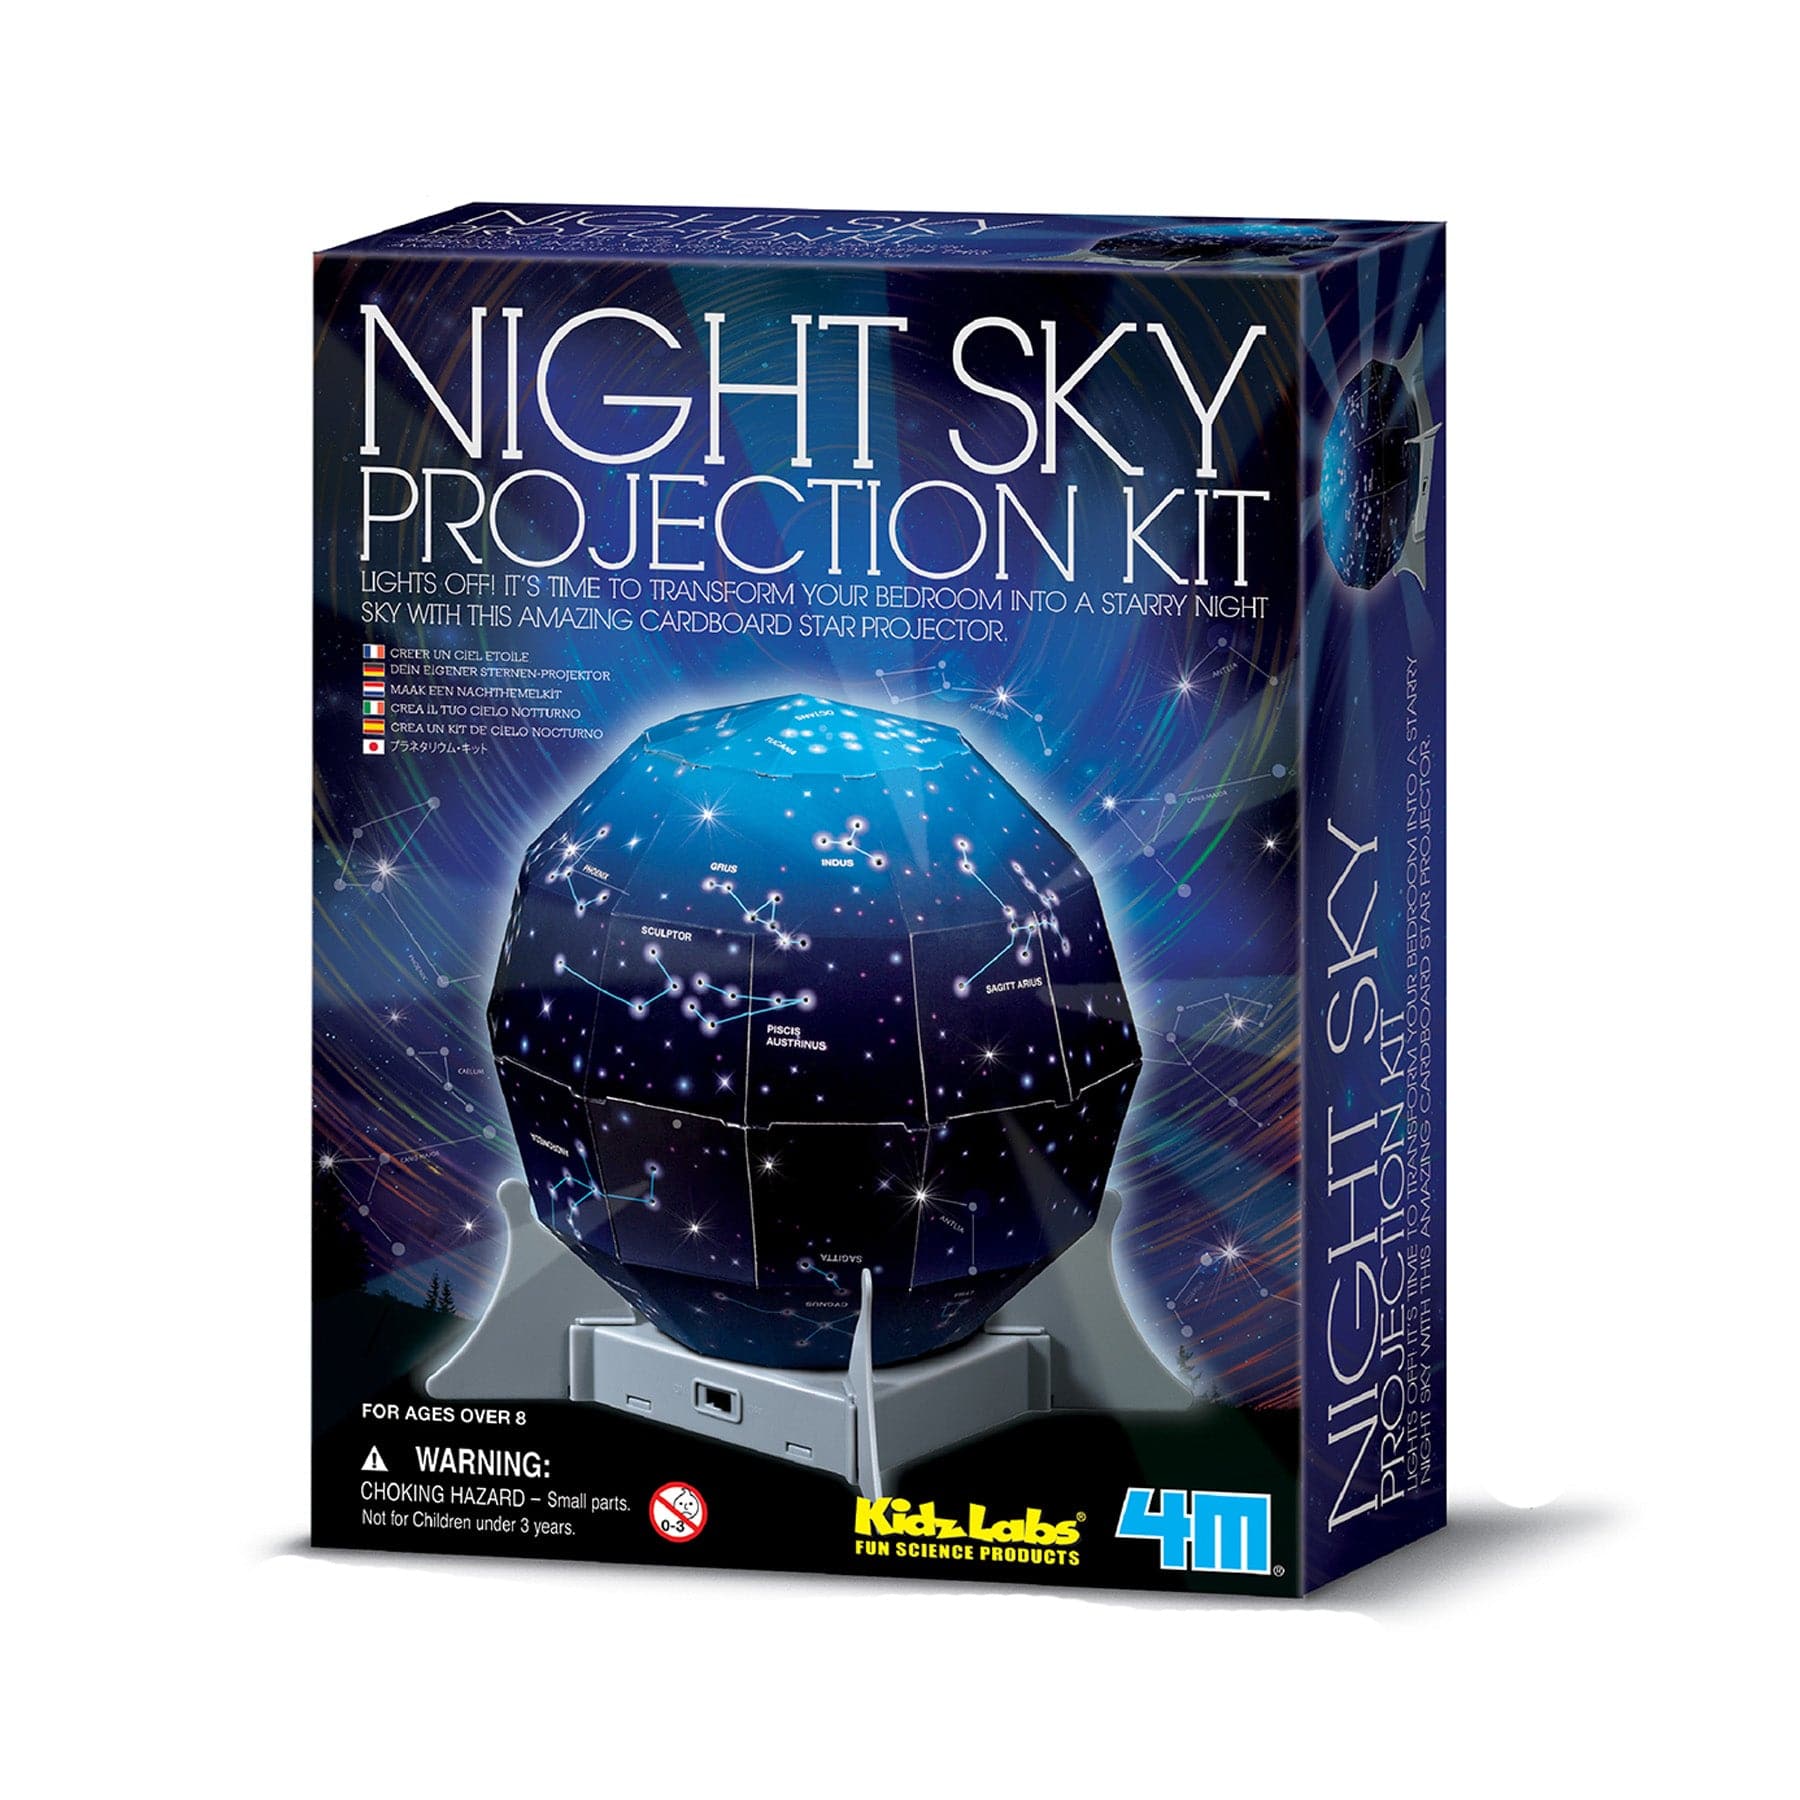 Night sky projection kit